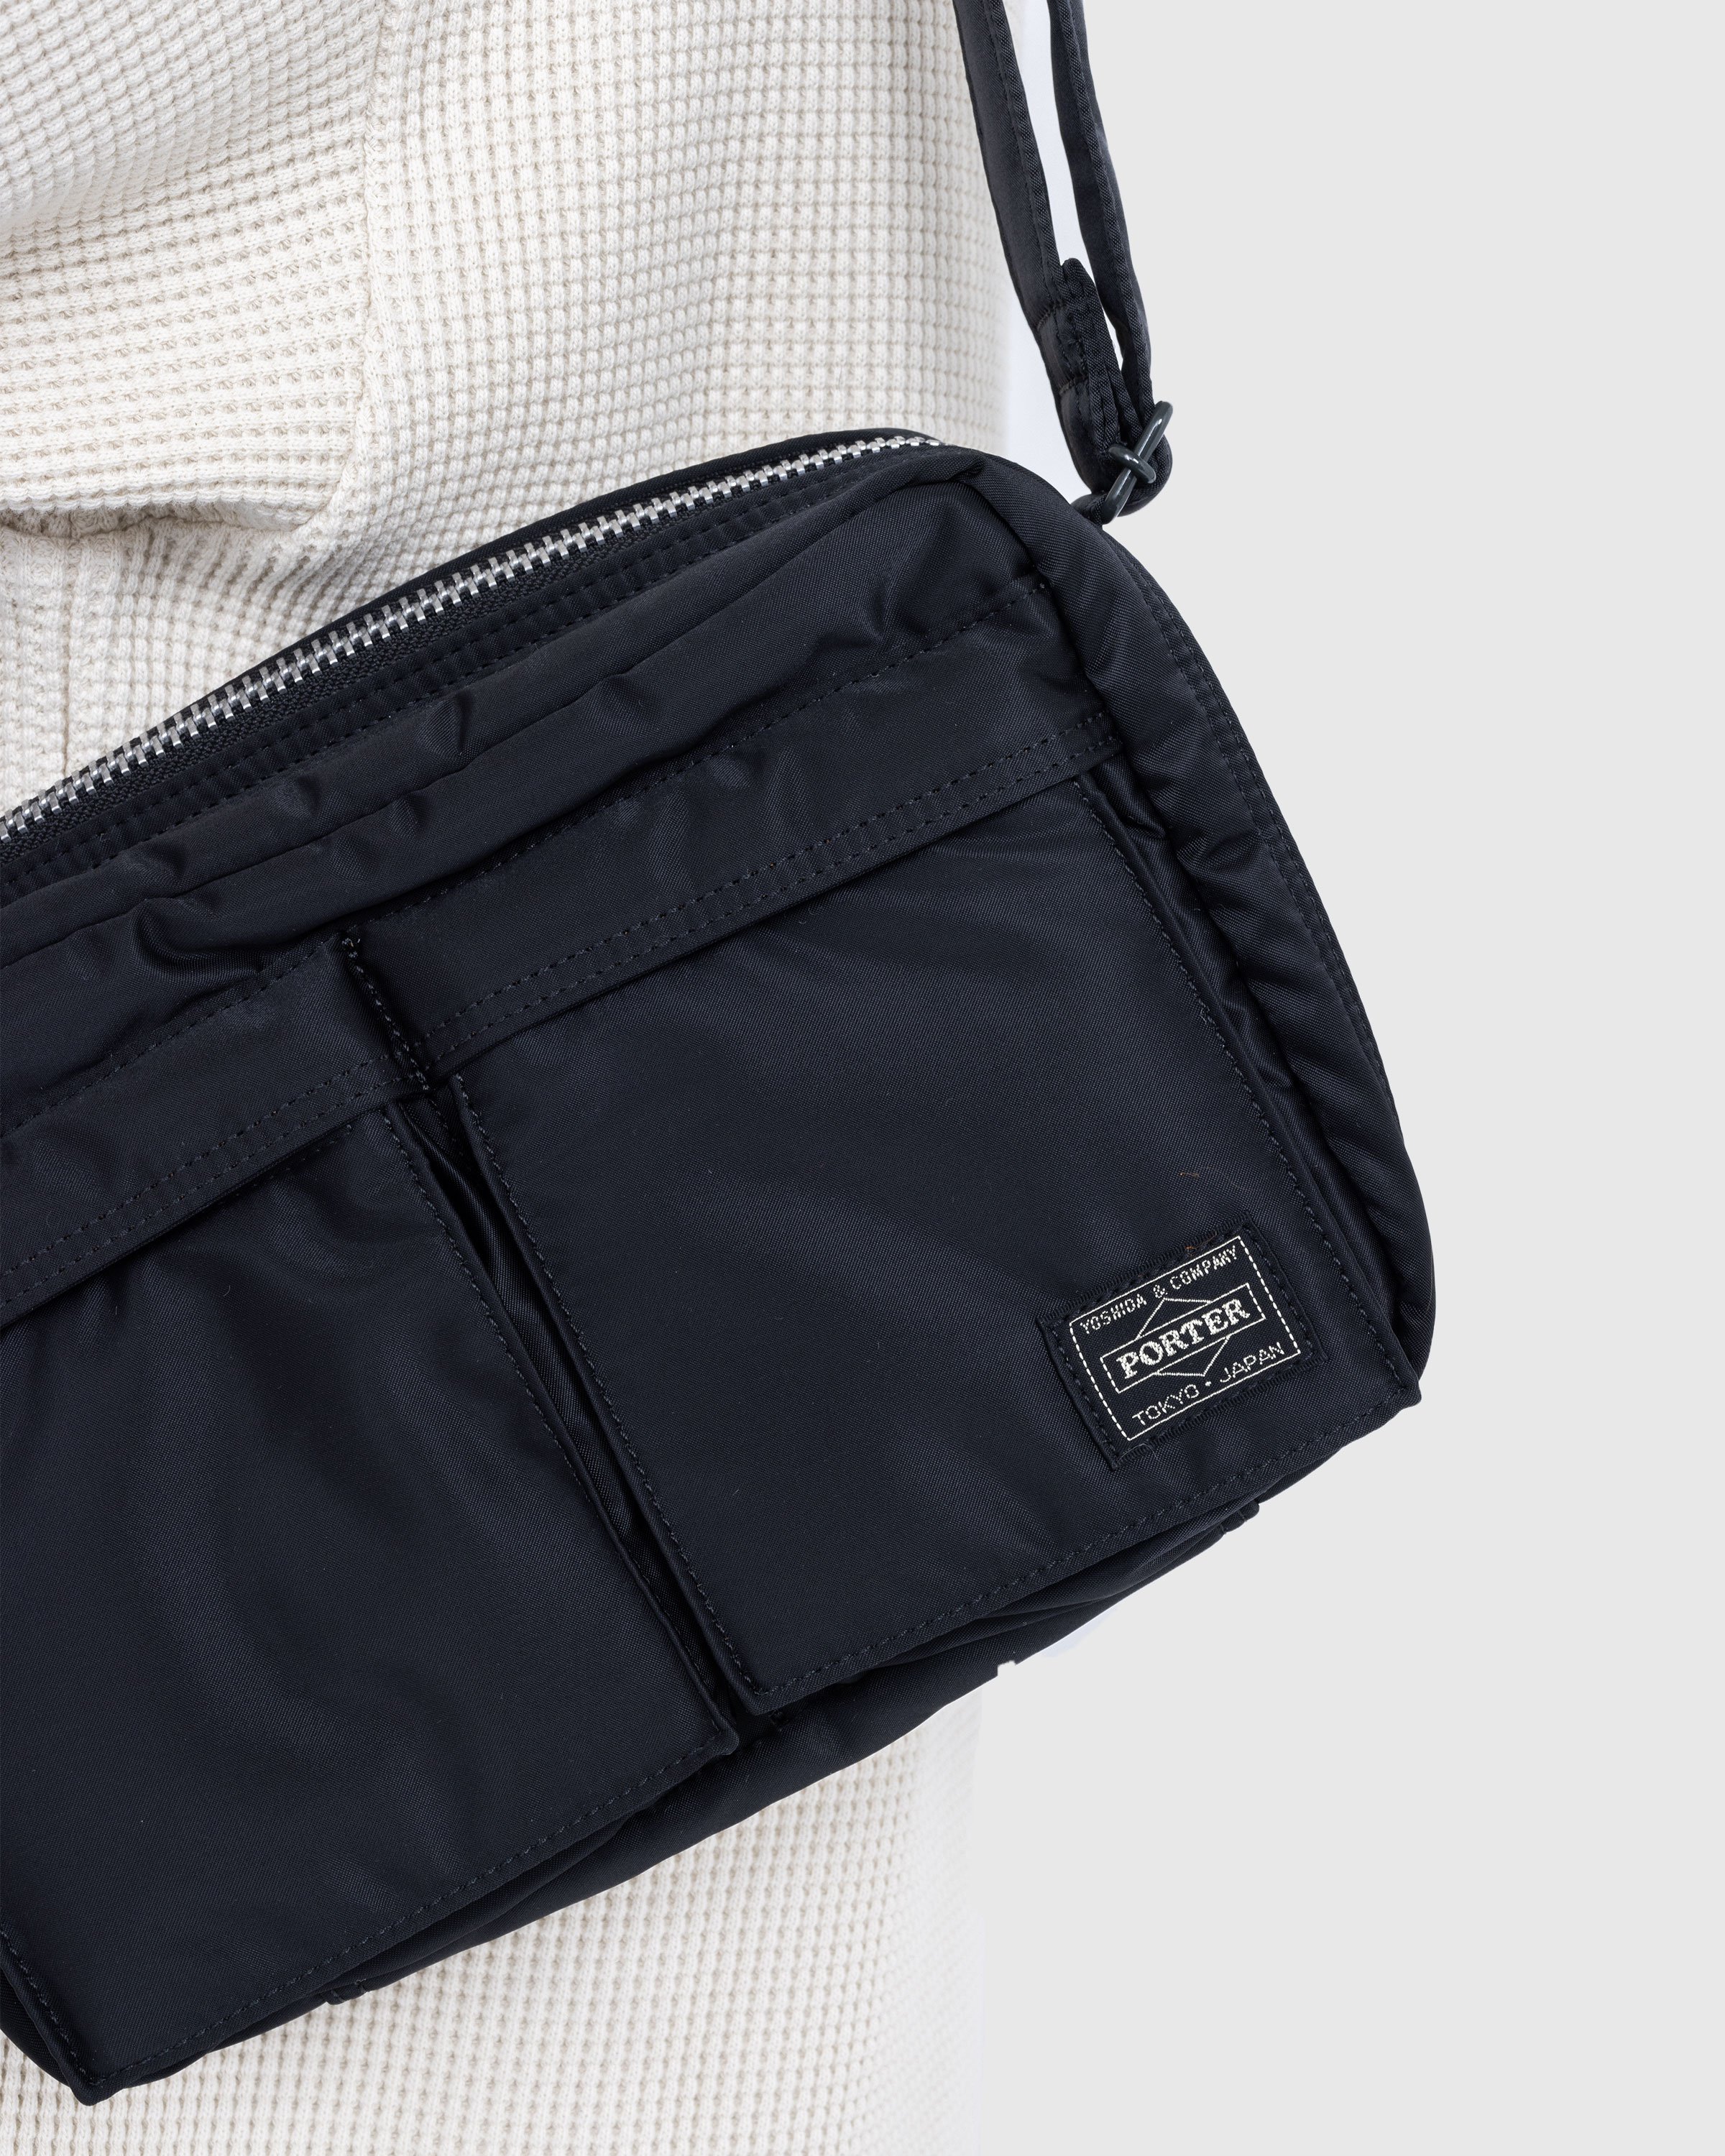 Porter-Yoshida & Co. - Tanker Shoulder Bag Black - Accessories - Black - Image 3